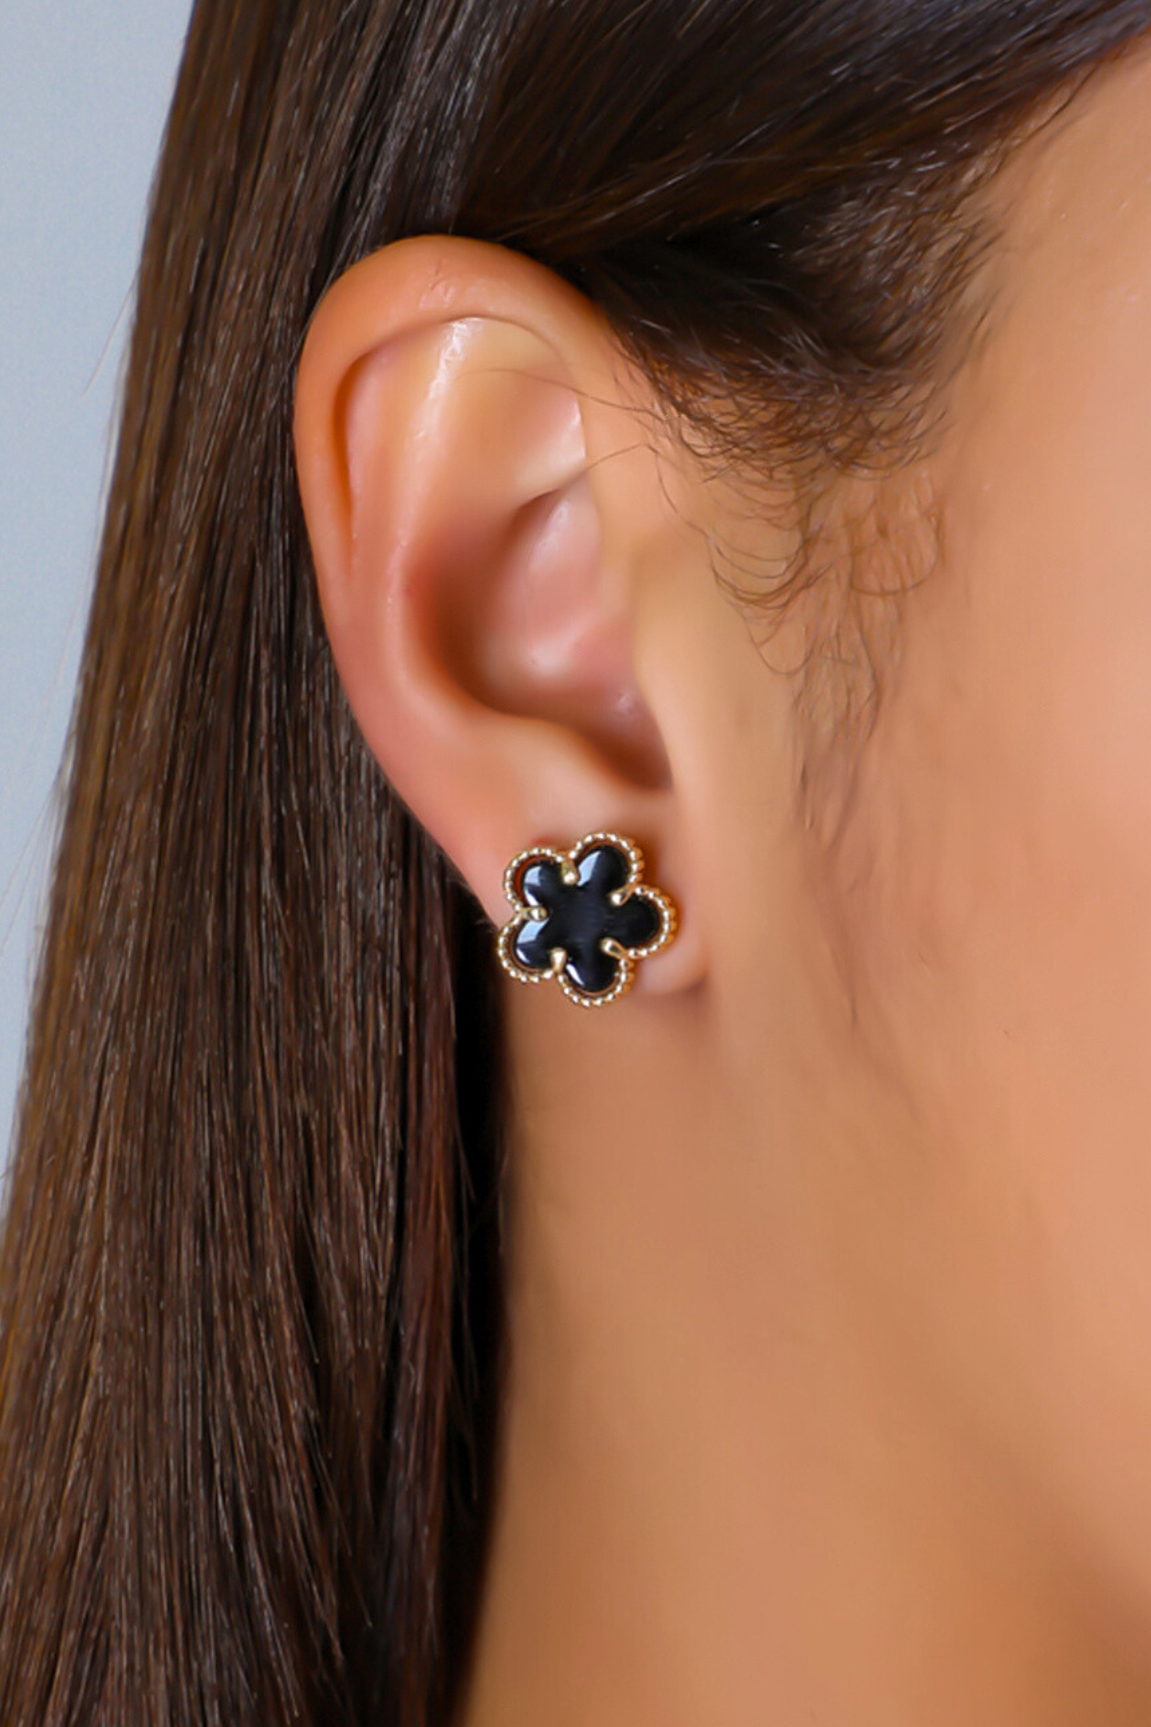 My Little Flower Earrings